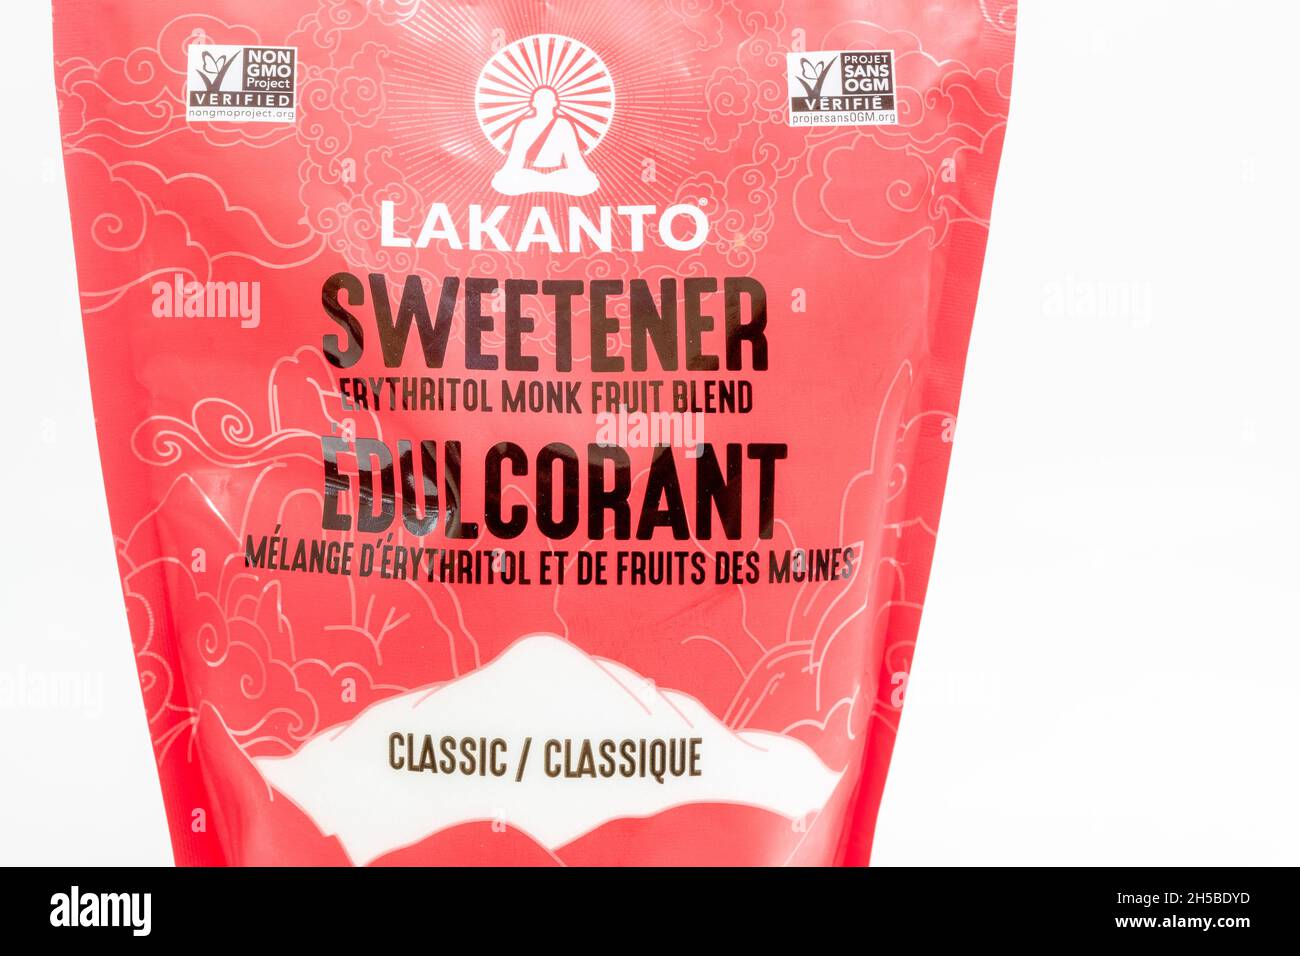 Vista frontal de un paquete que contiene Lakanto Sweetener que está hecho de Erythritol monje mezcla de frutas. 7 de noviembre de 2021 Foto de stock